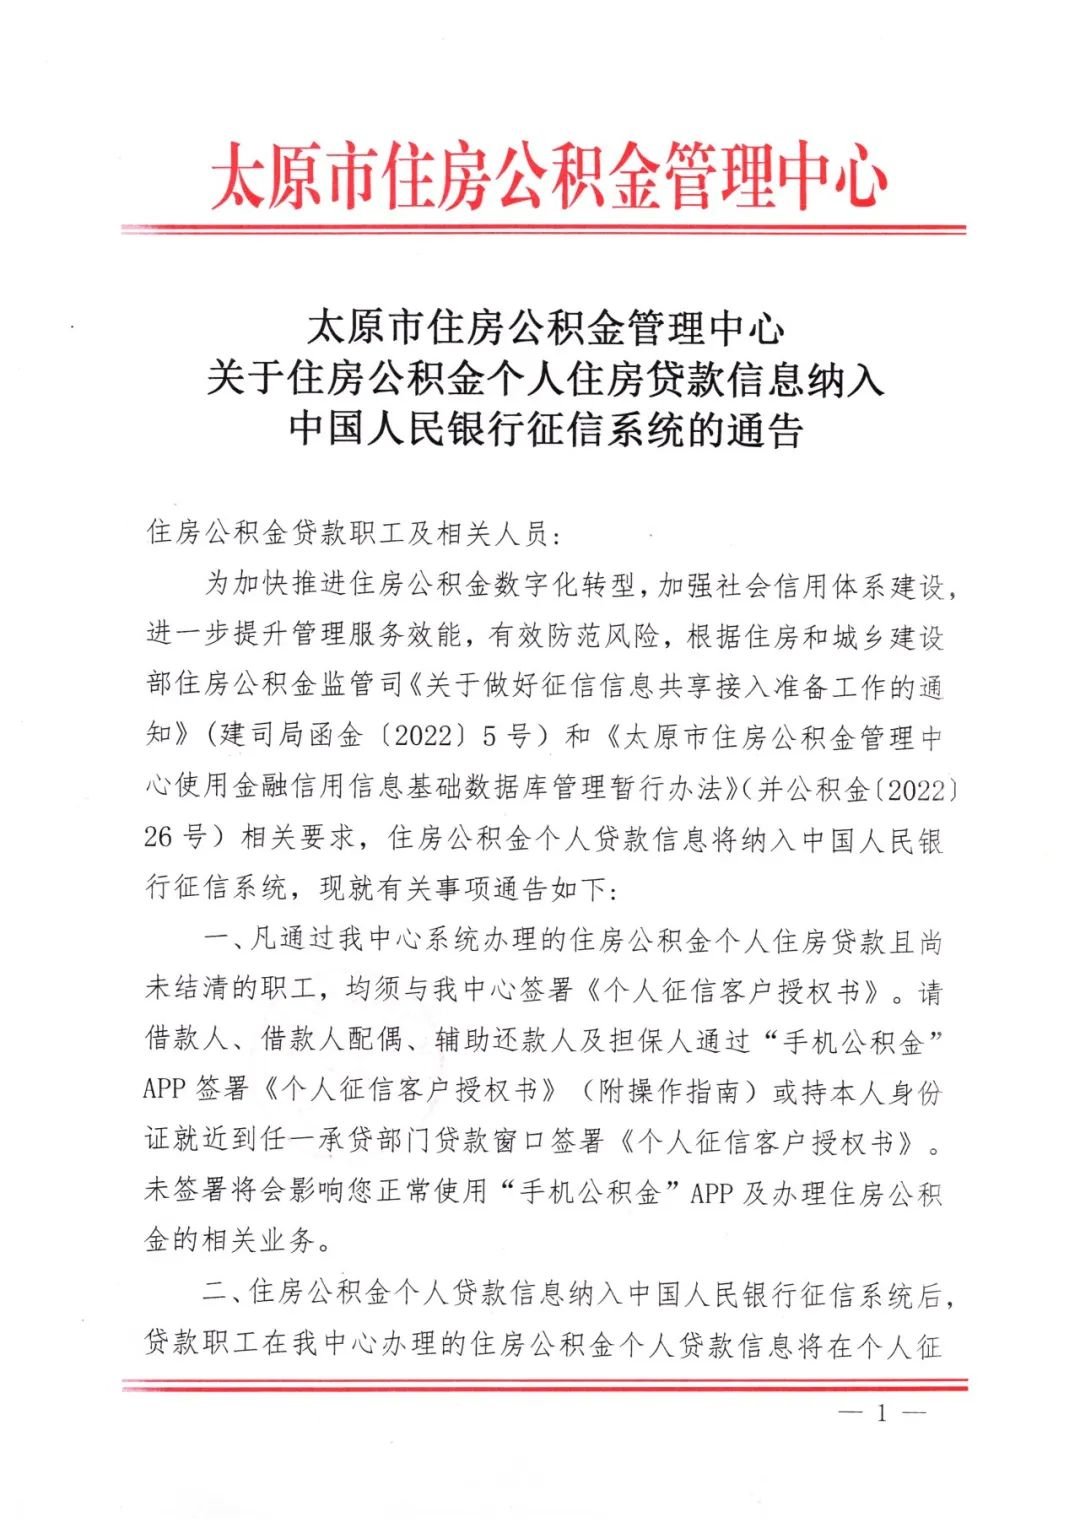 太原市住房公积金个人住房贷款信息 纳入中国人民银行征信系统